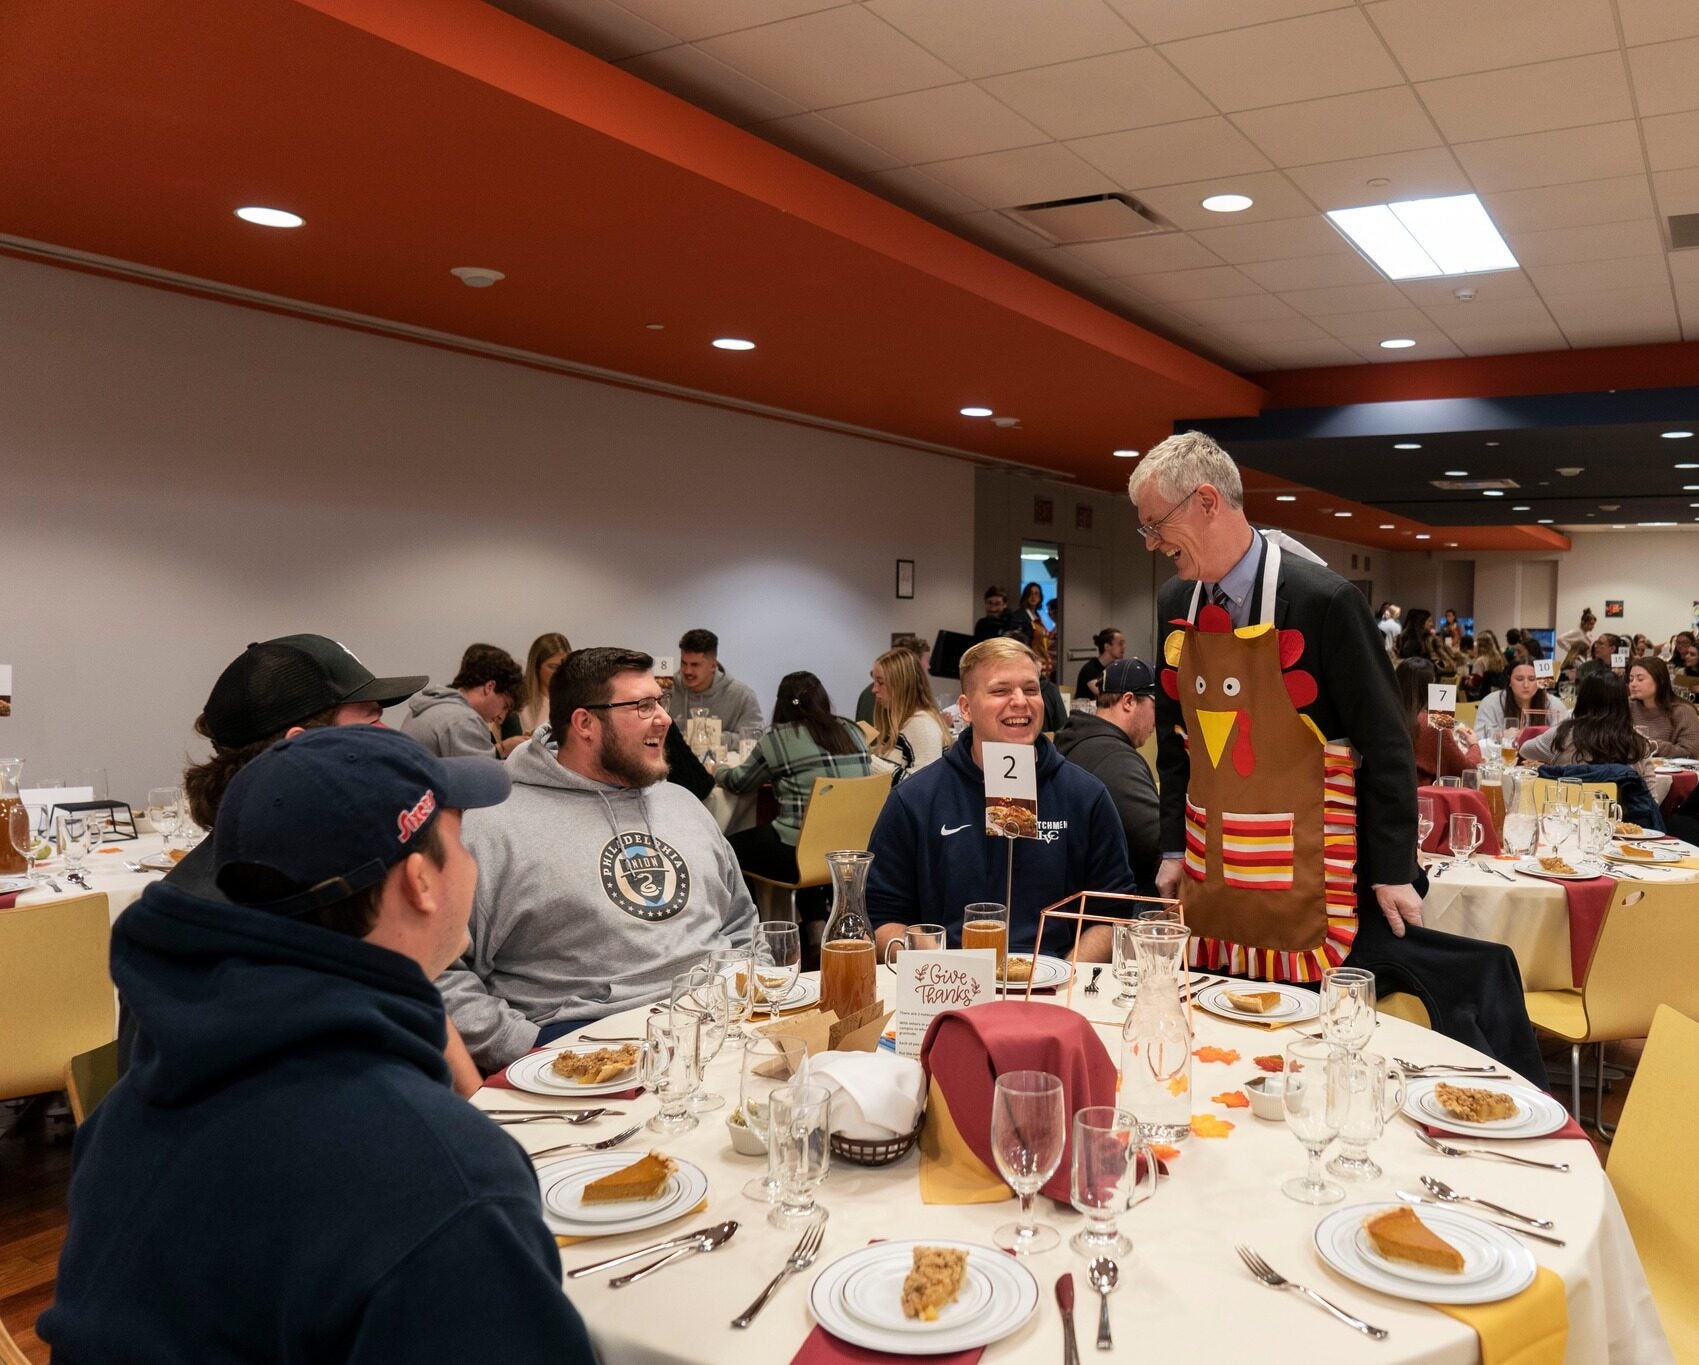 President MacLaren serves pie during Thanksgiving dinner for students